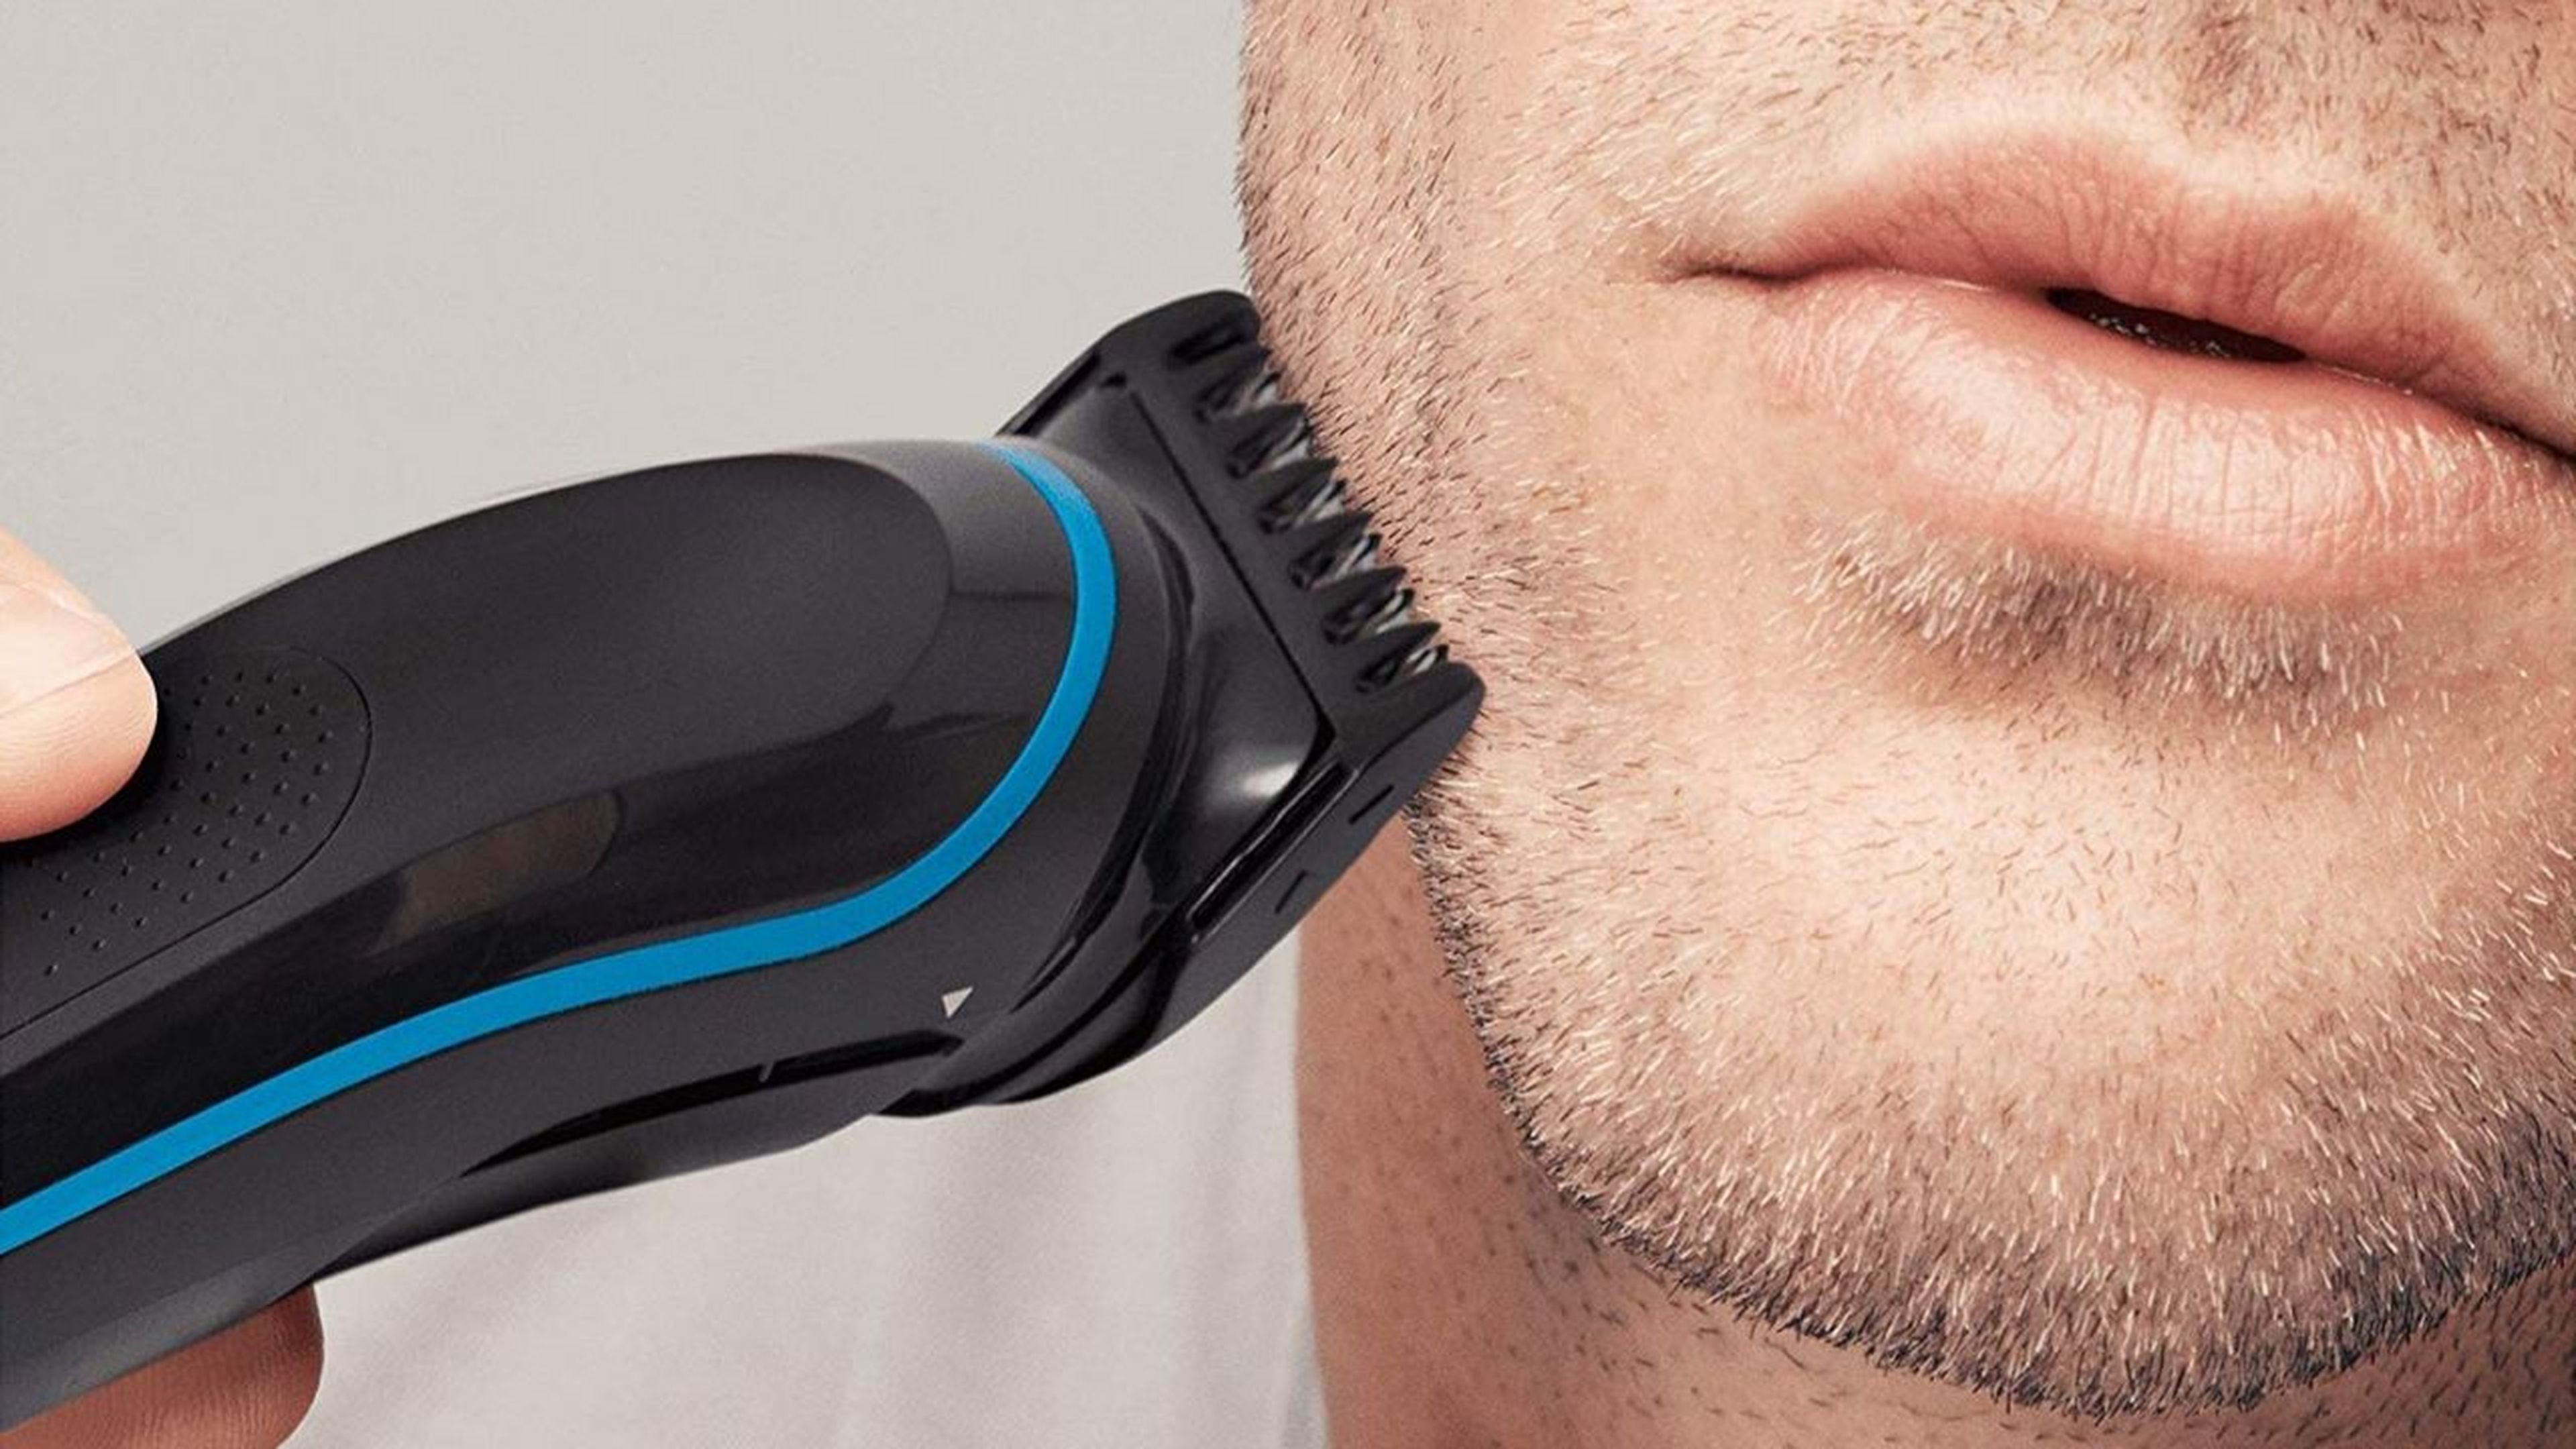 Ofertón!: La mejor afeitadora eléctrica de Braun ahora a mitad de precio en